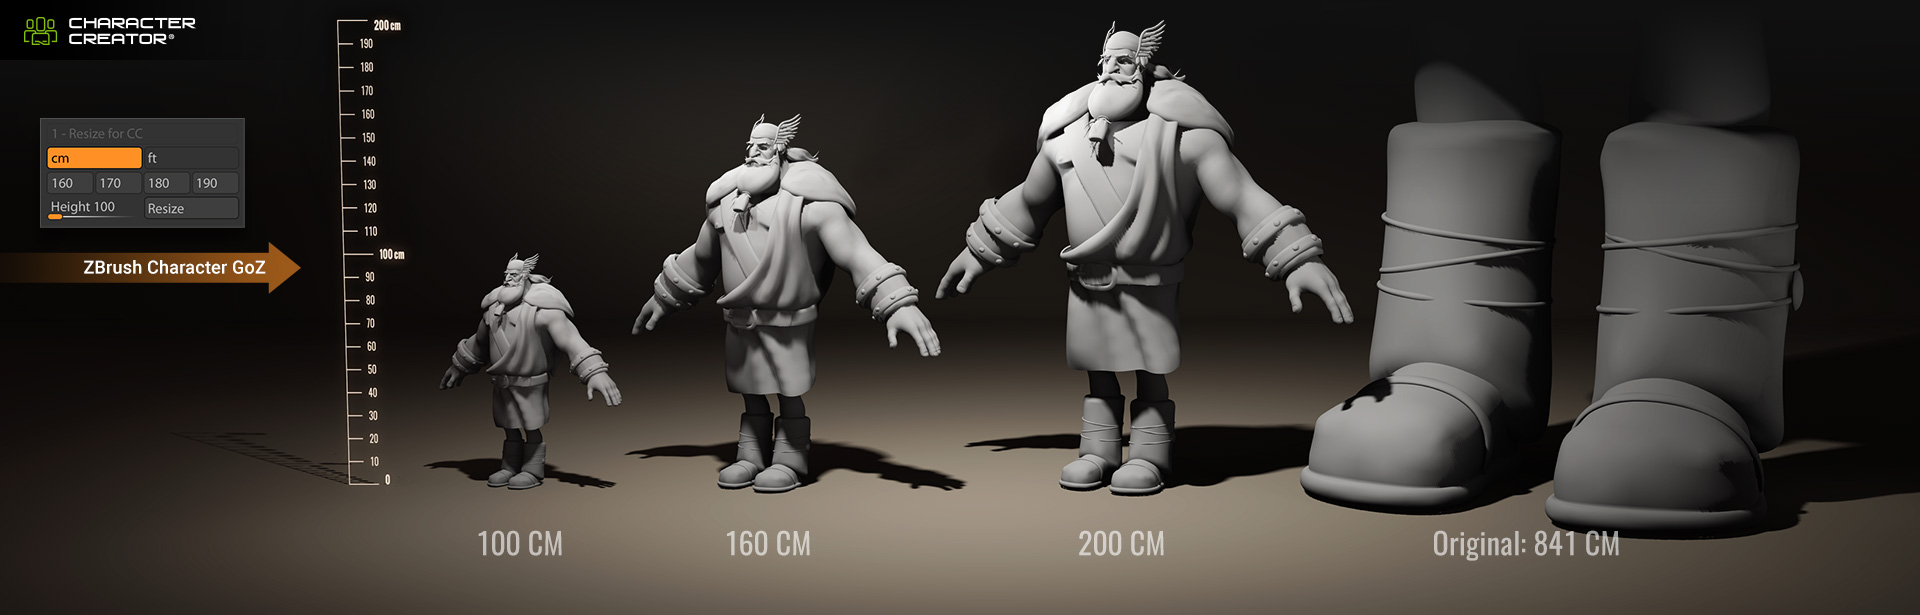 Desire FX 3d models | Six Arm Creature model and 3D Print Kit 3D model